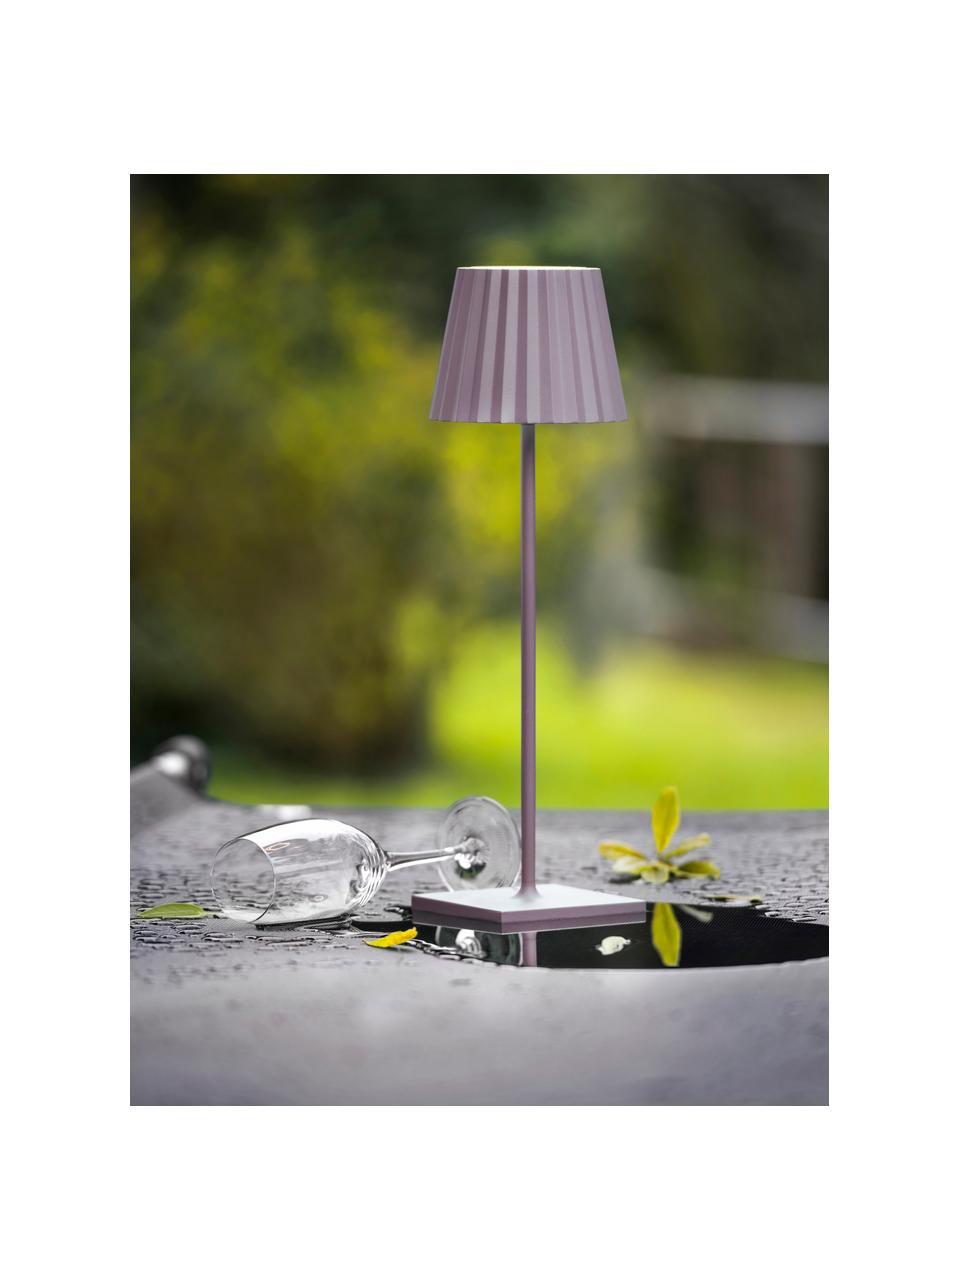 Lampada da tavolo da esterno portatile con luce regolabile Trellia, Alluminio laccato, Rosa, Ø 15 x Alt. 38 cm